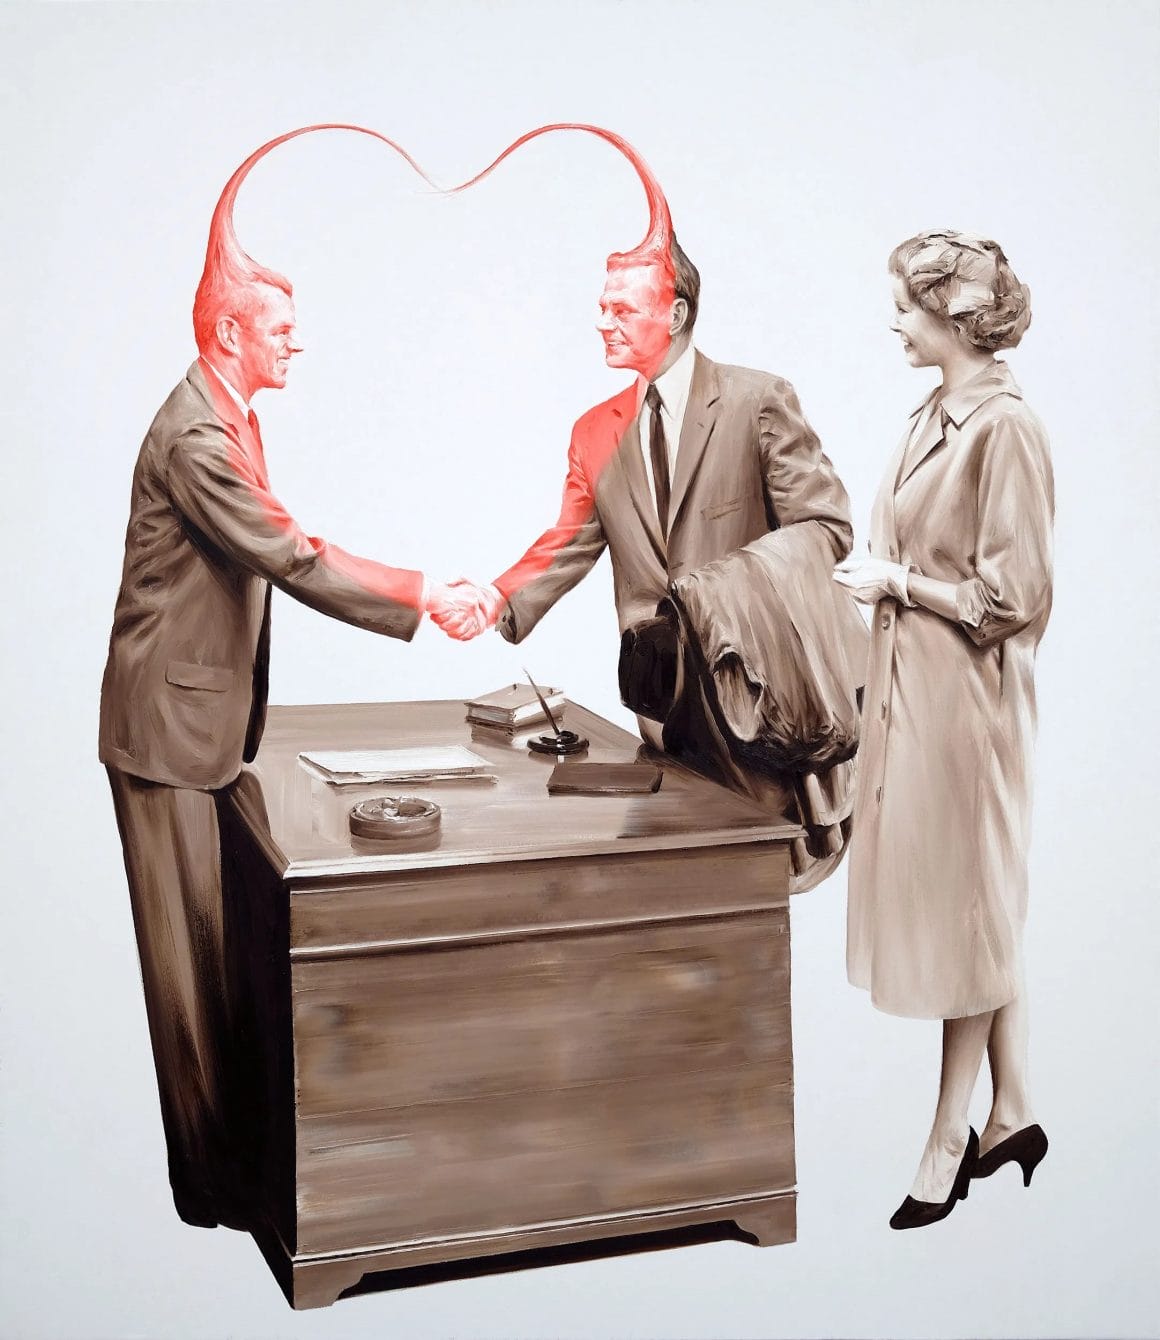 Image de deux hommes se serrant la main au dessus d'un bureau d'affaire, le second est accompagné de sa femme. Un coeur rejoint les deux hommes, usant de leurs bras qui se joignent et des leurs cheveux.